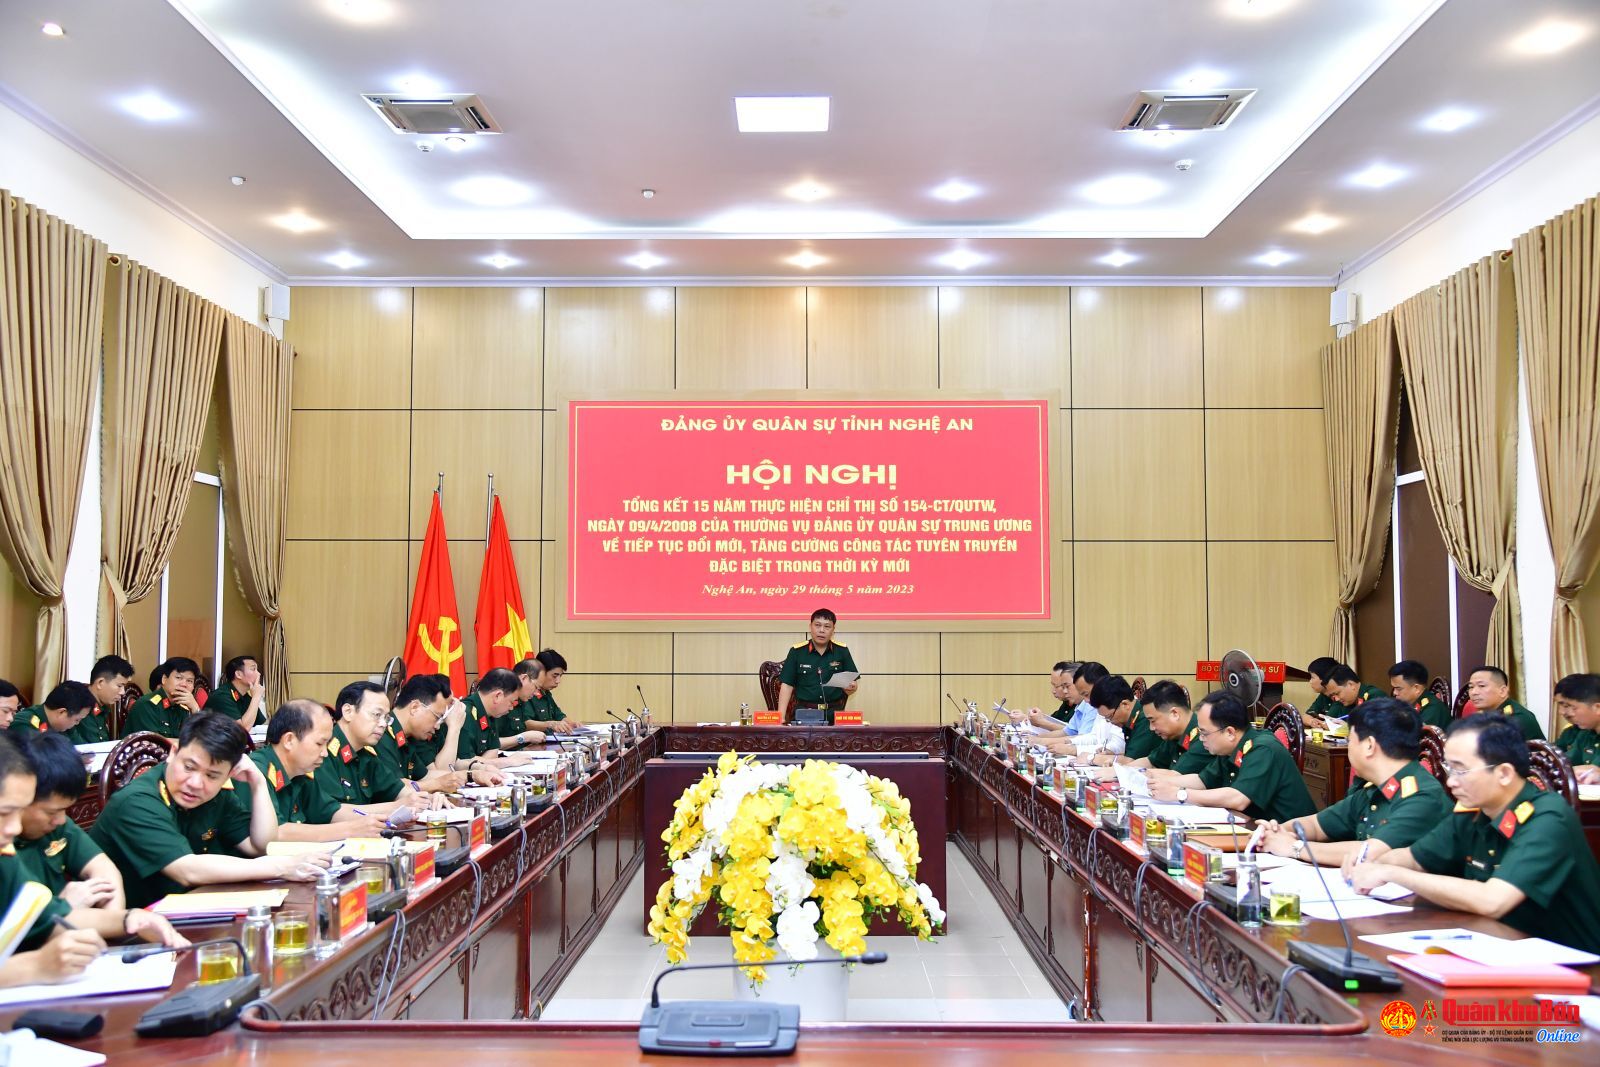 Đảng ủy Quân sự tỉnh Nghệ An tiếp tục đổi mới, tăng cường công tác tuyên truyền đặc biệt trong thời kỳ mới